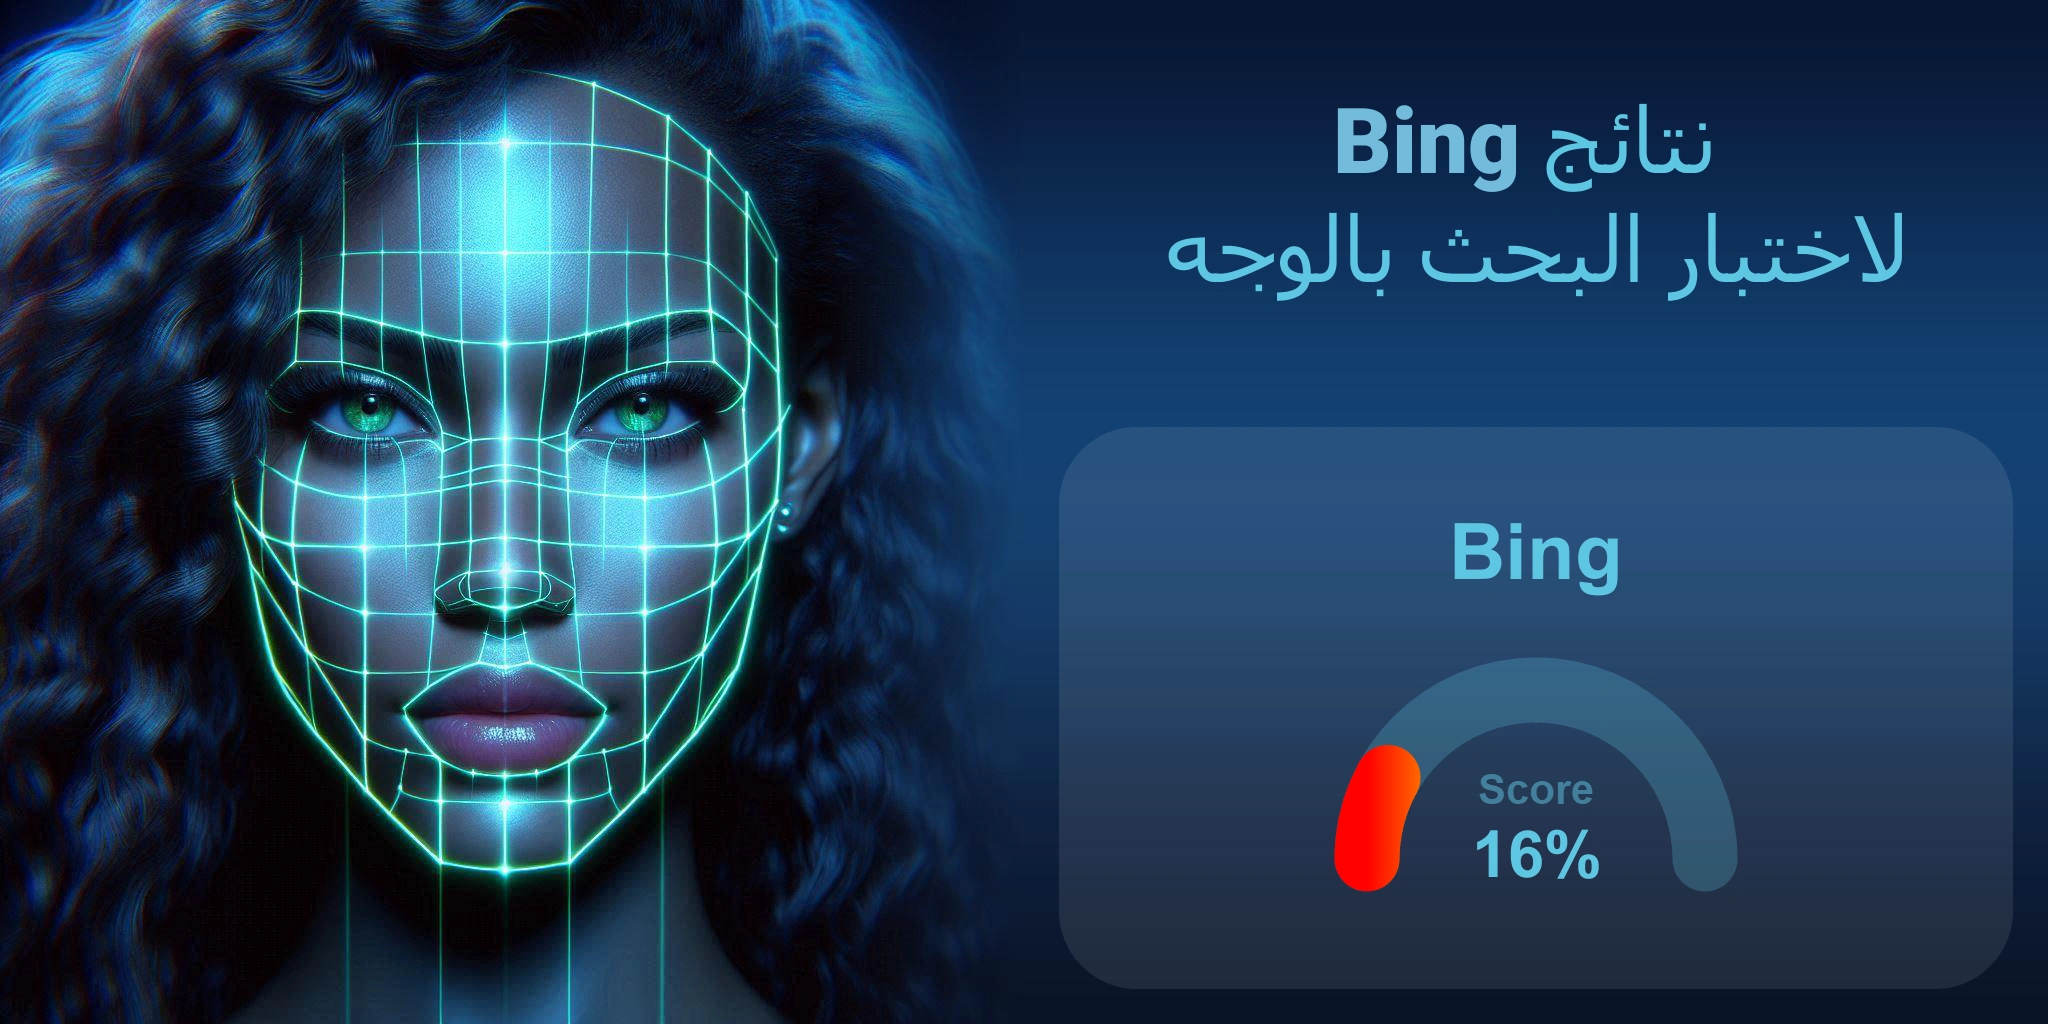 هل Bing هو الأفضل للبحث بالوجه؟